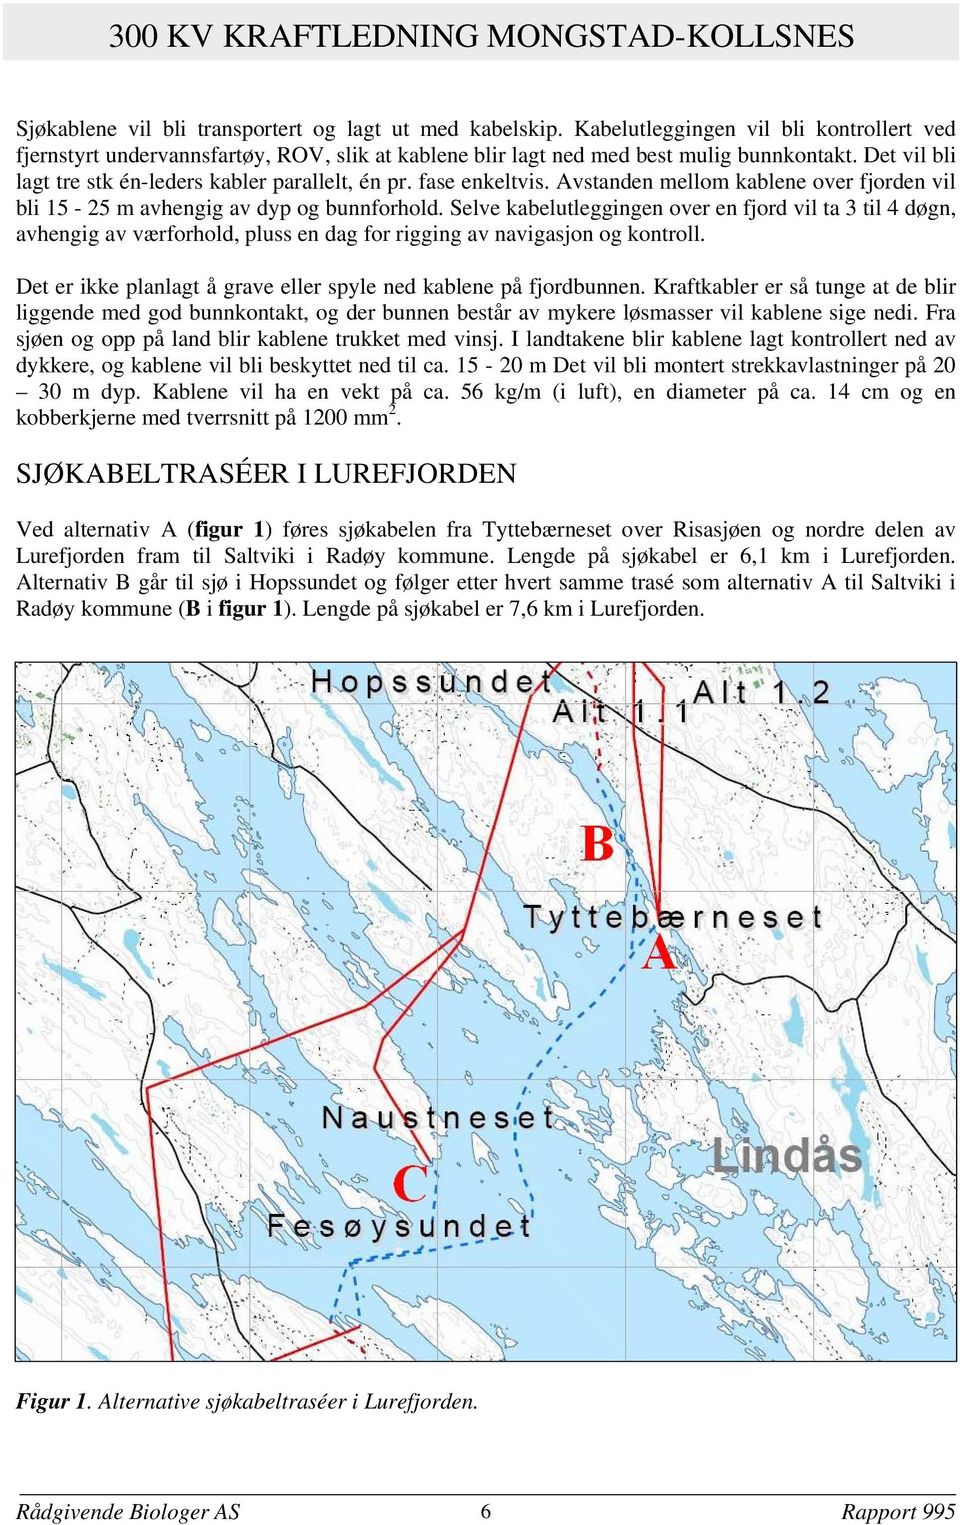 fase enkeltvis. Avstanden mellom kablene over fjorden vil bli 15-25 m avhengig av dyp og bunnforhold.